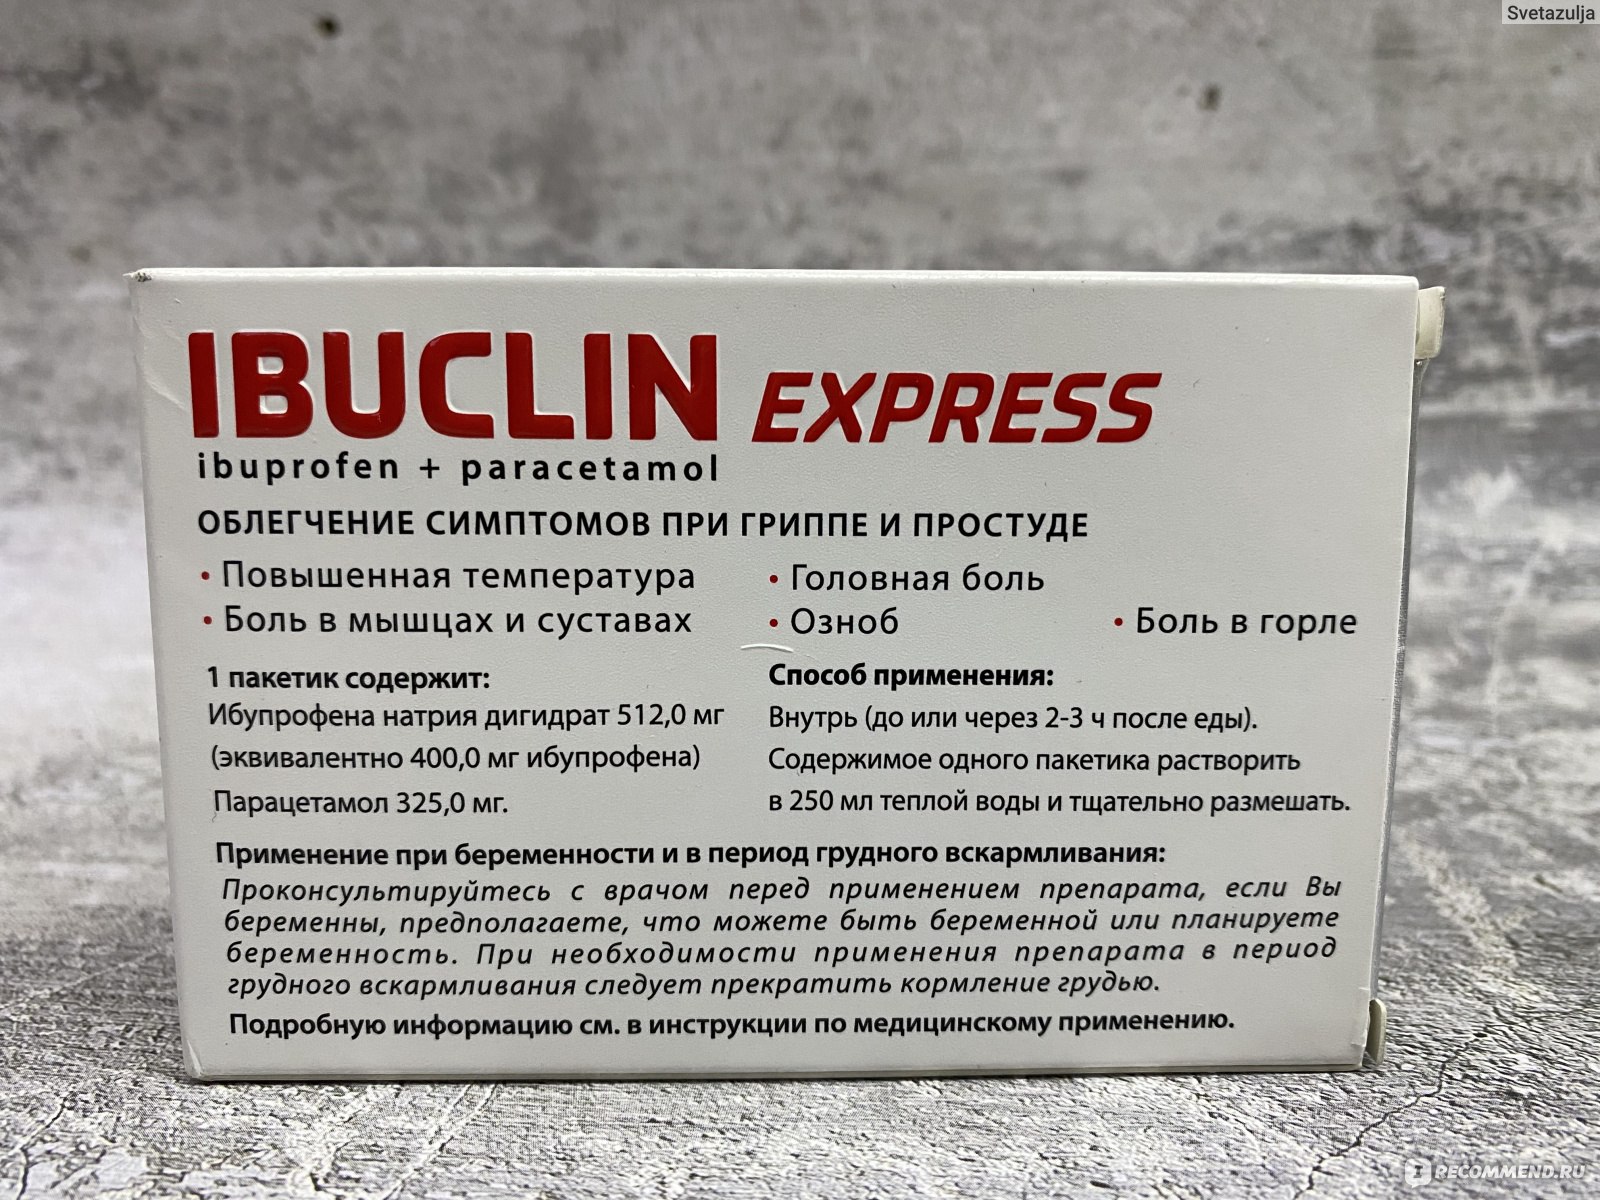 Лекарственный препарат Dr. Reddy's ибуклин экспресс порошок - «Быстро .